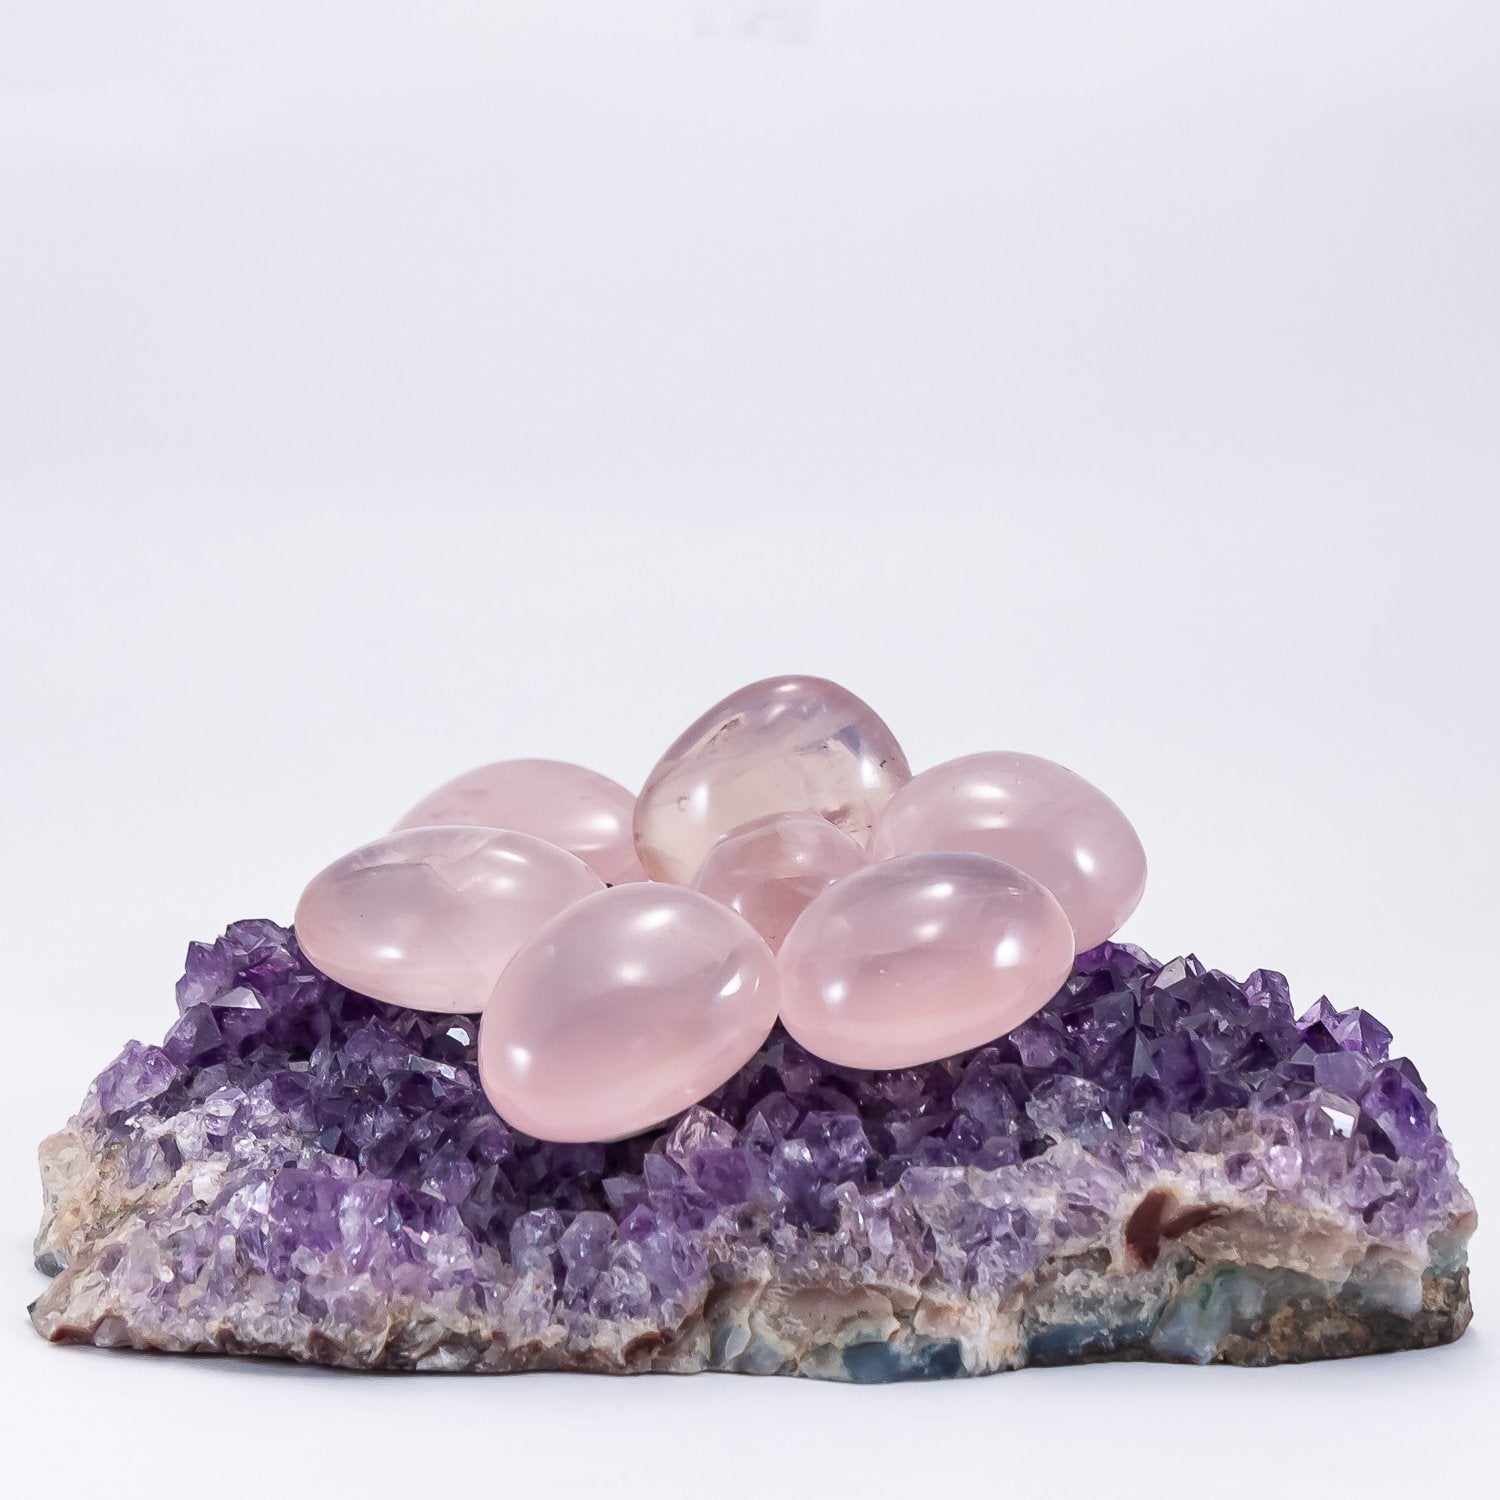 rose quartz polished stones from madagascar. size small. Grade A++.